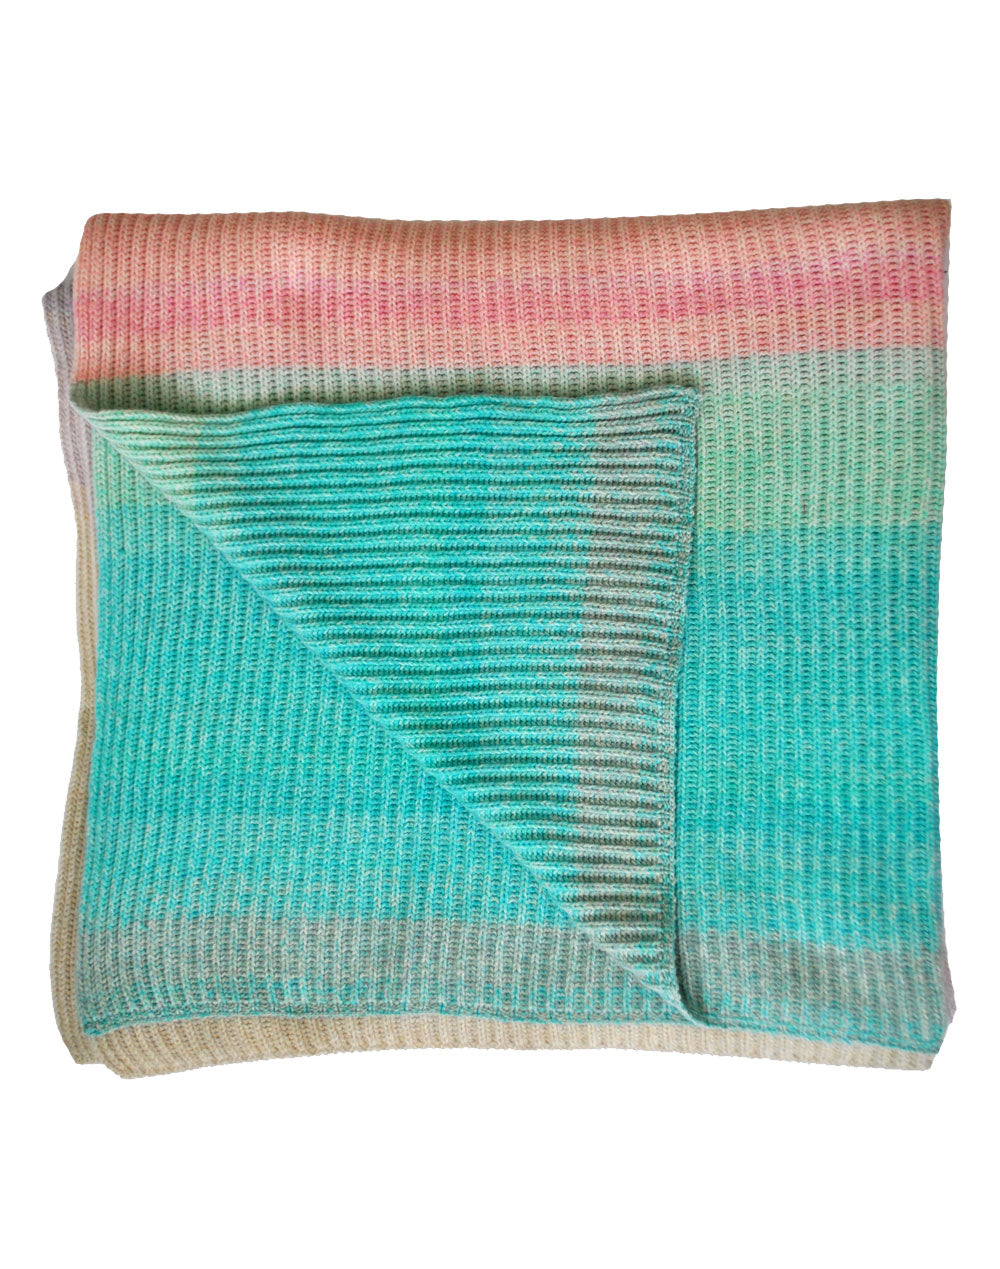 Multicolor blanket